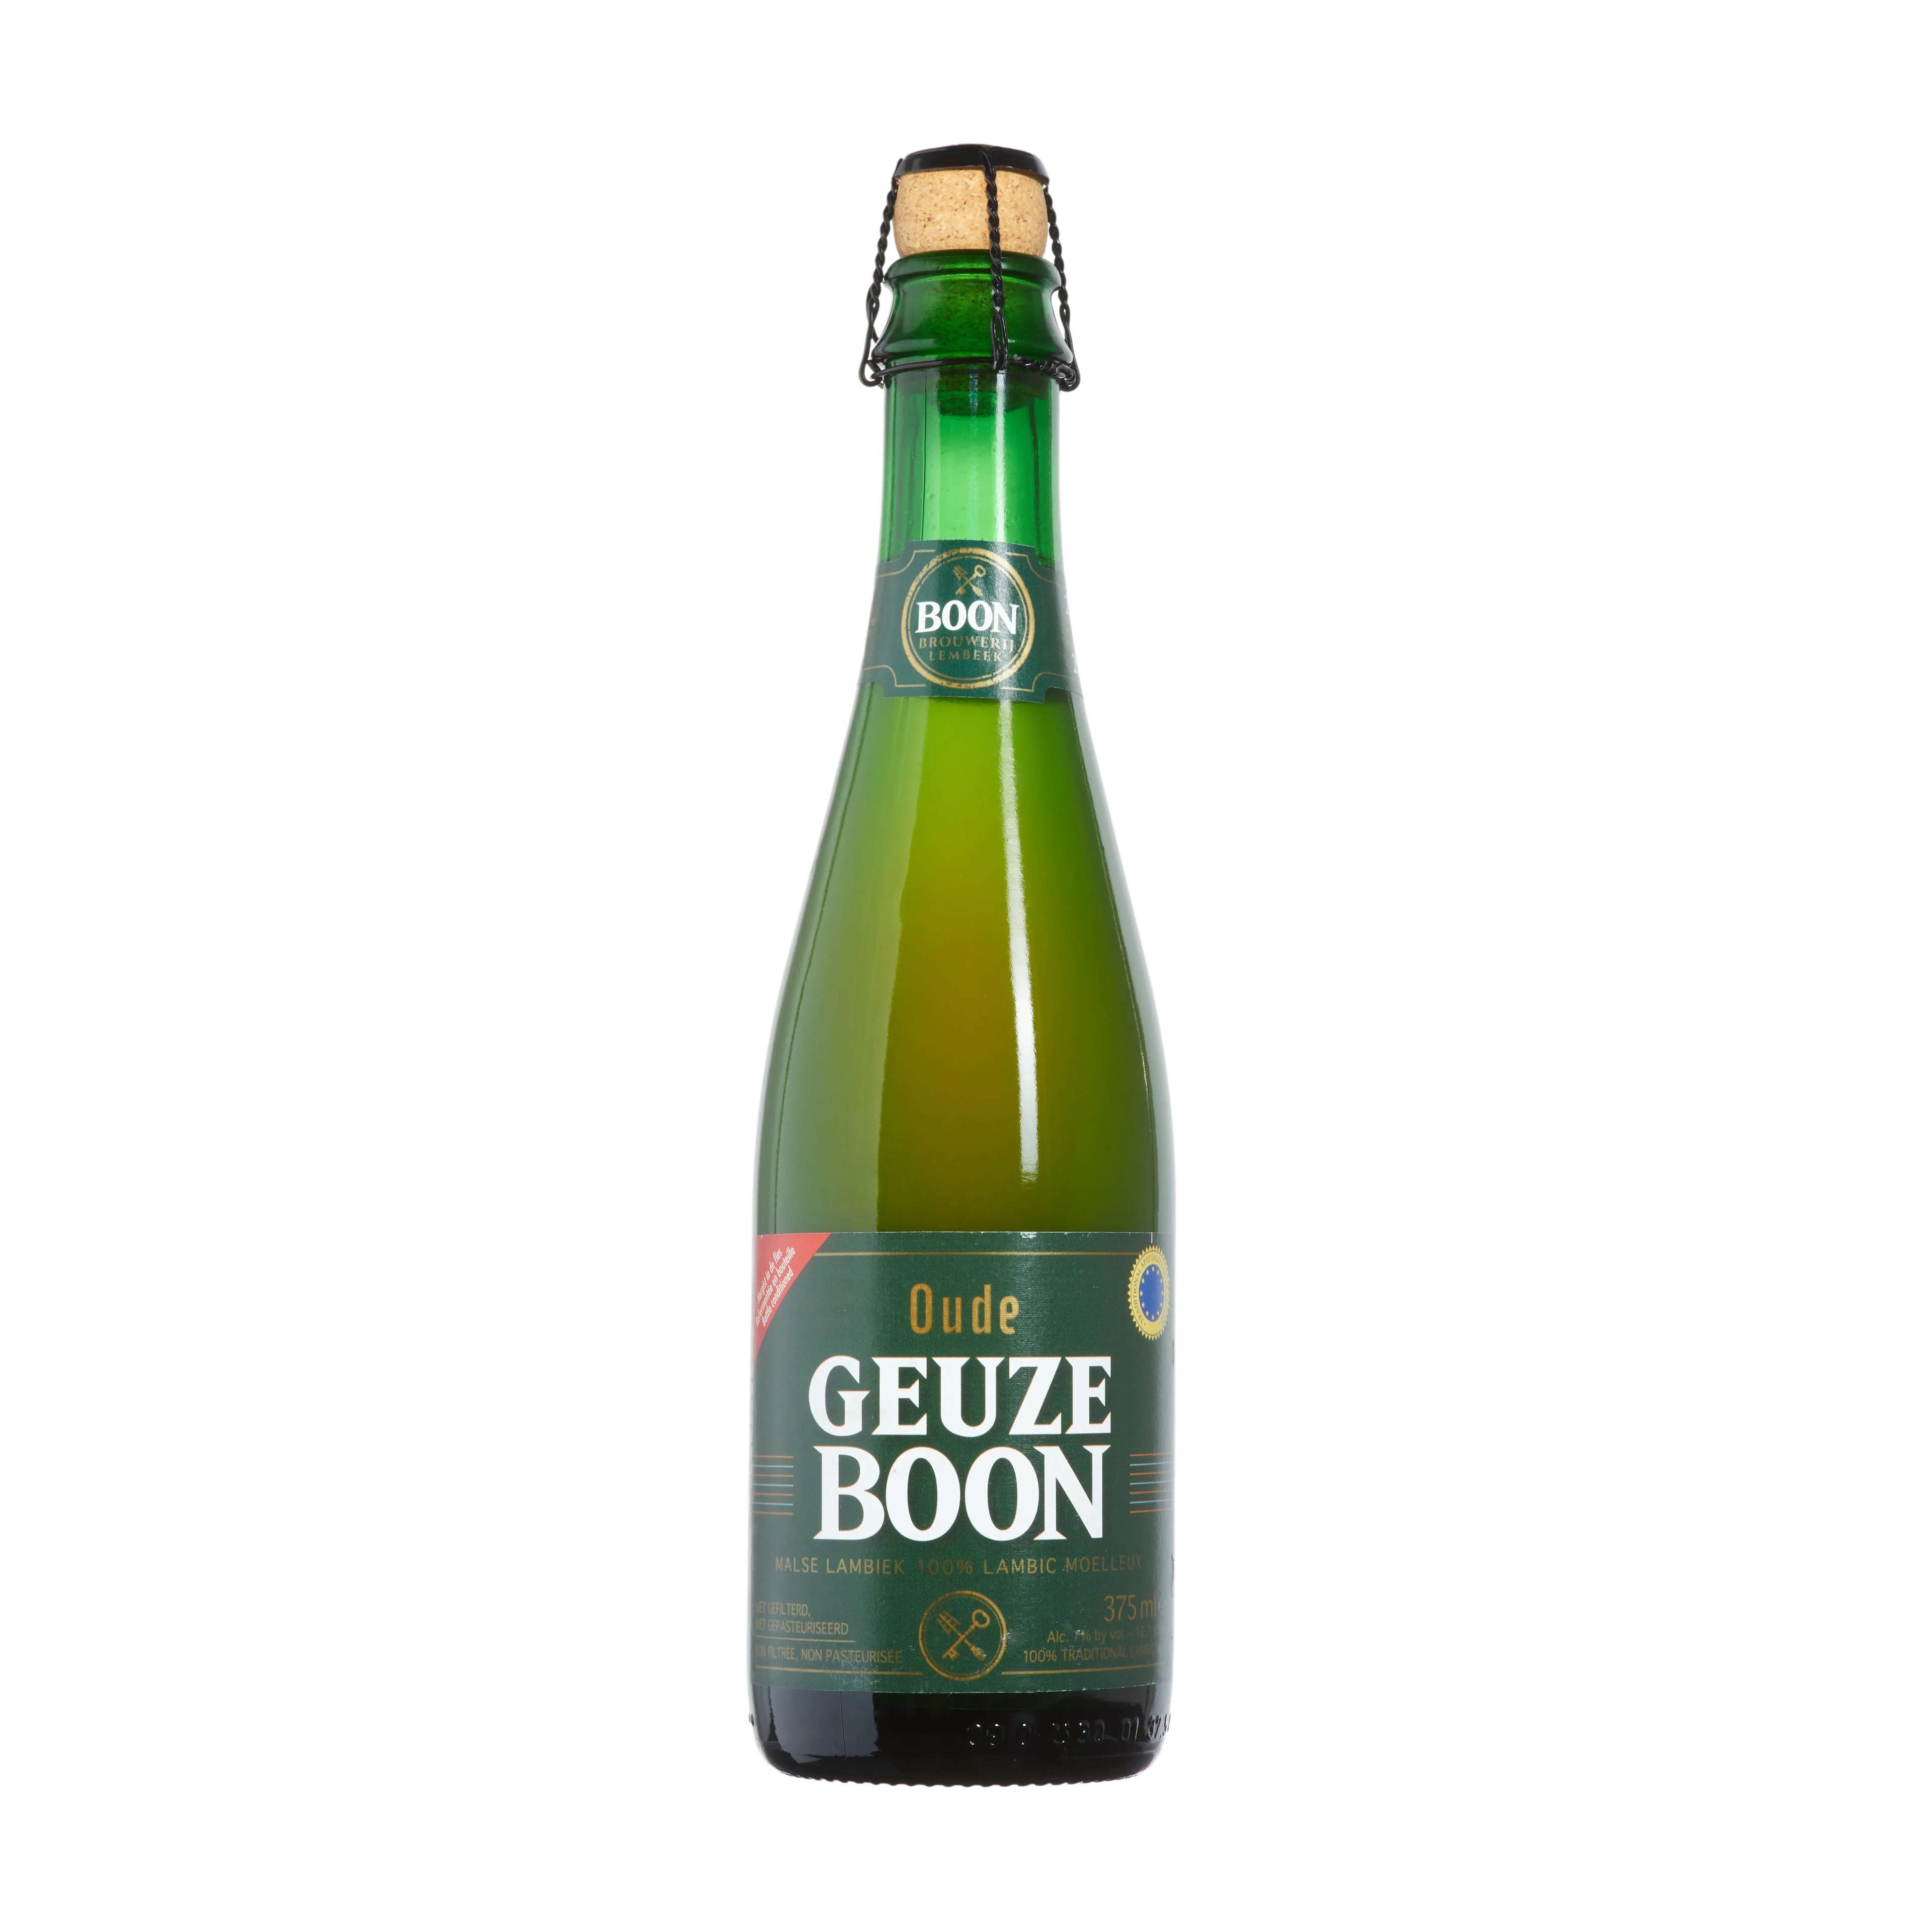 Brauerei Boon Oude Geuze Boon